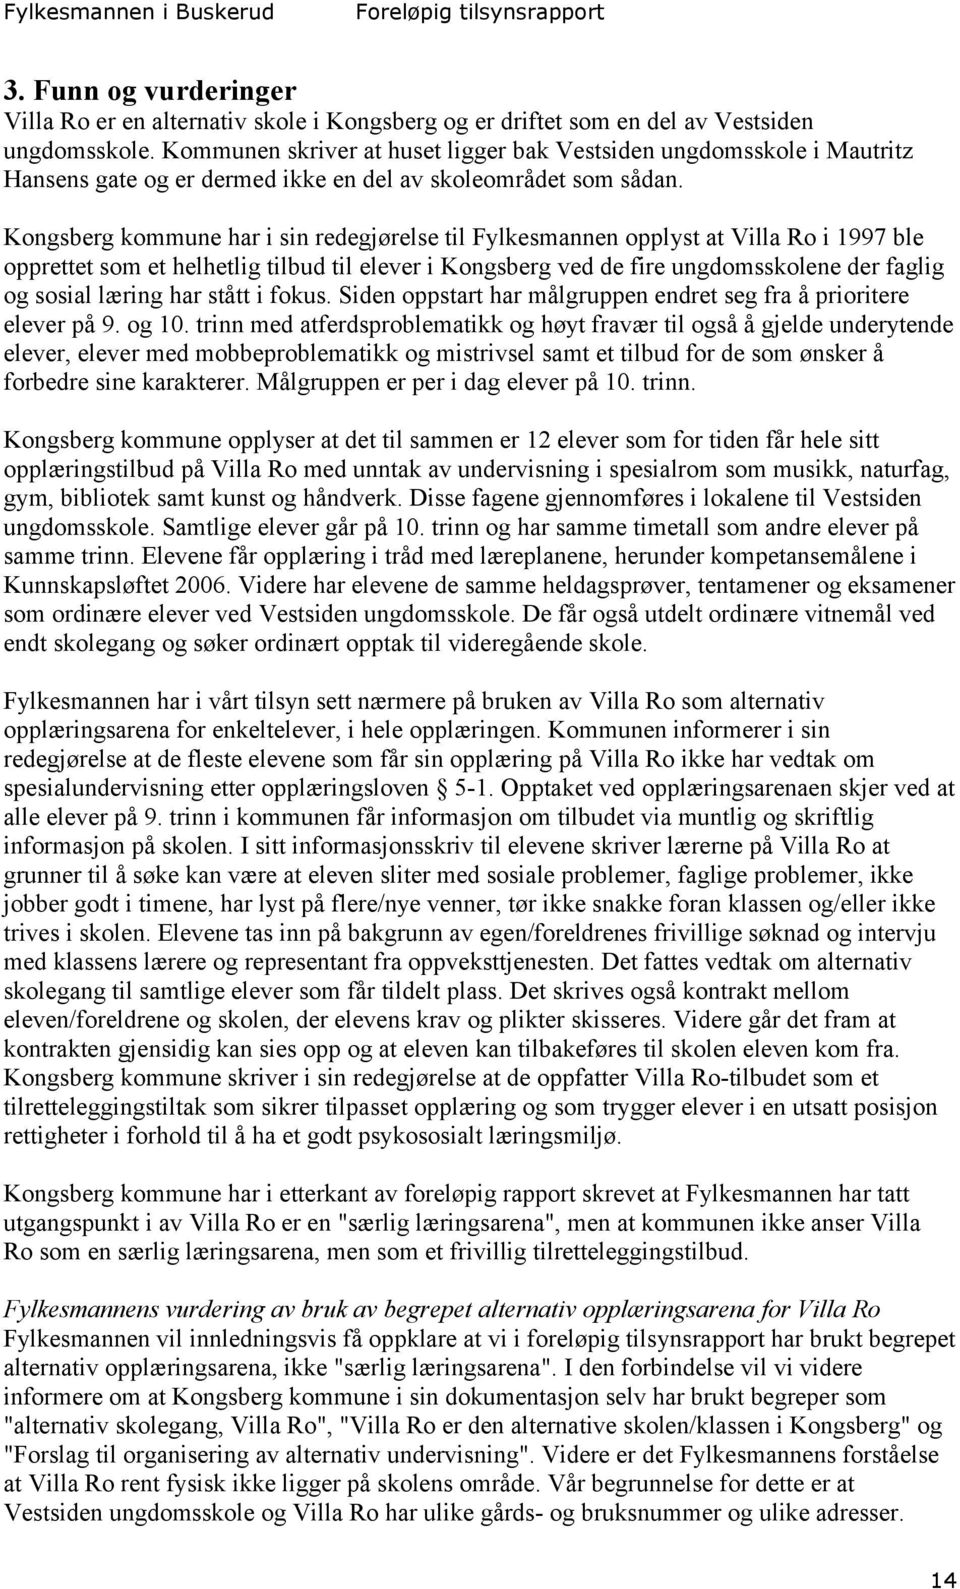 Kongsberg kommune har i sin redegjørelse til Fylkesmannen opplyst at Villa Ro i 1997 ble opprettet som et helhetlig tilbud til elever i Kongsberg ved de fire ungdomsskolene der faglig og sosial